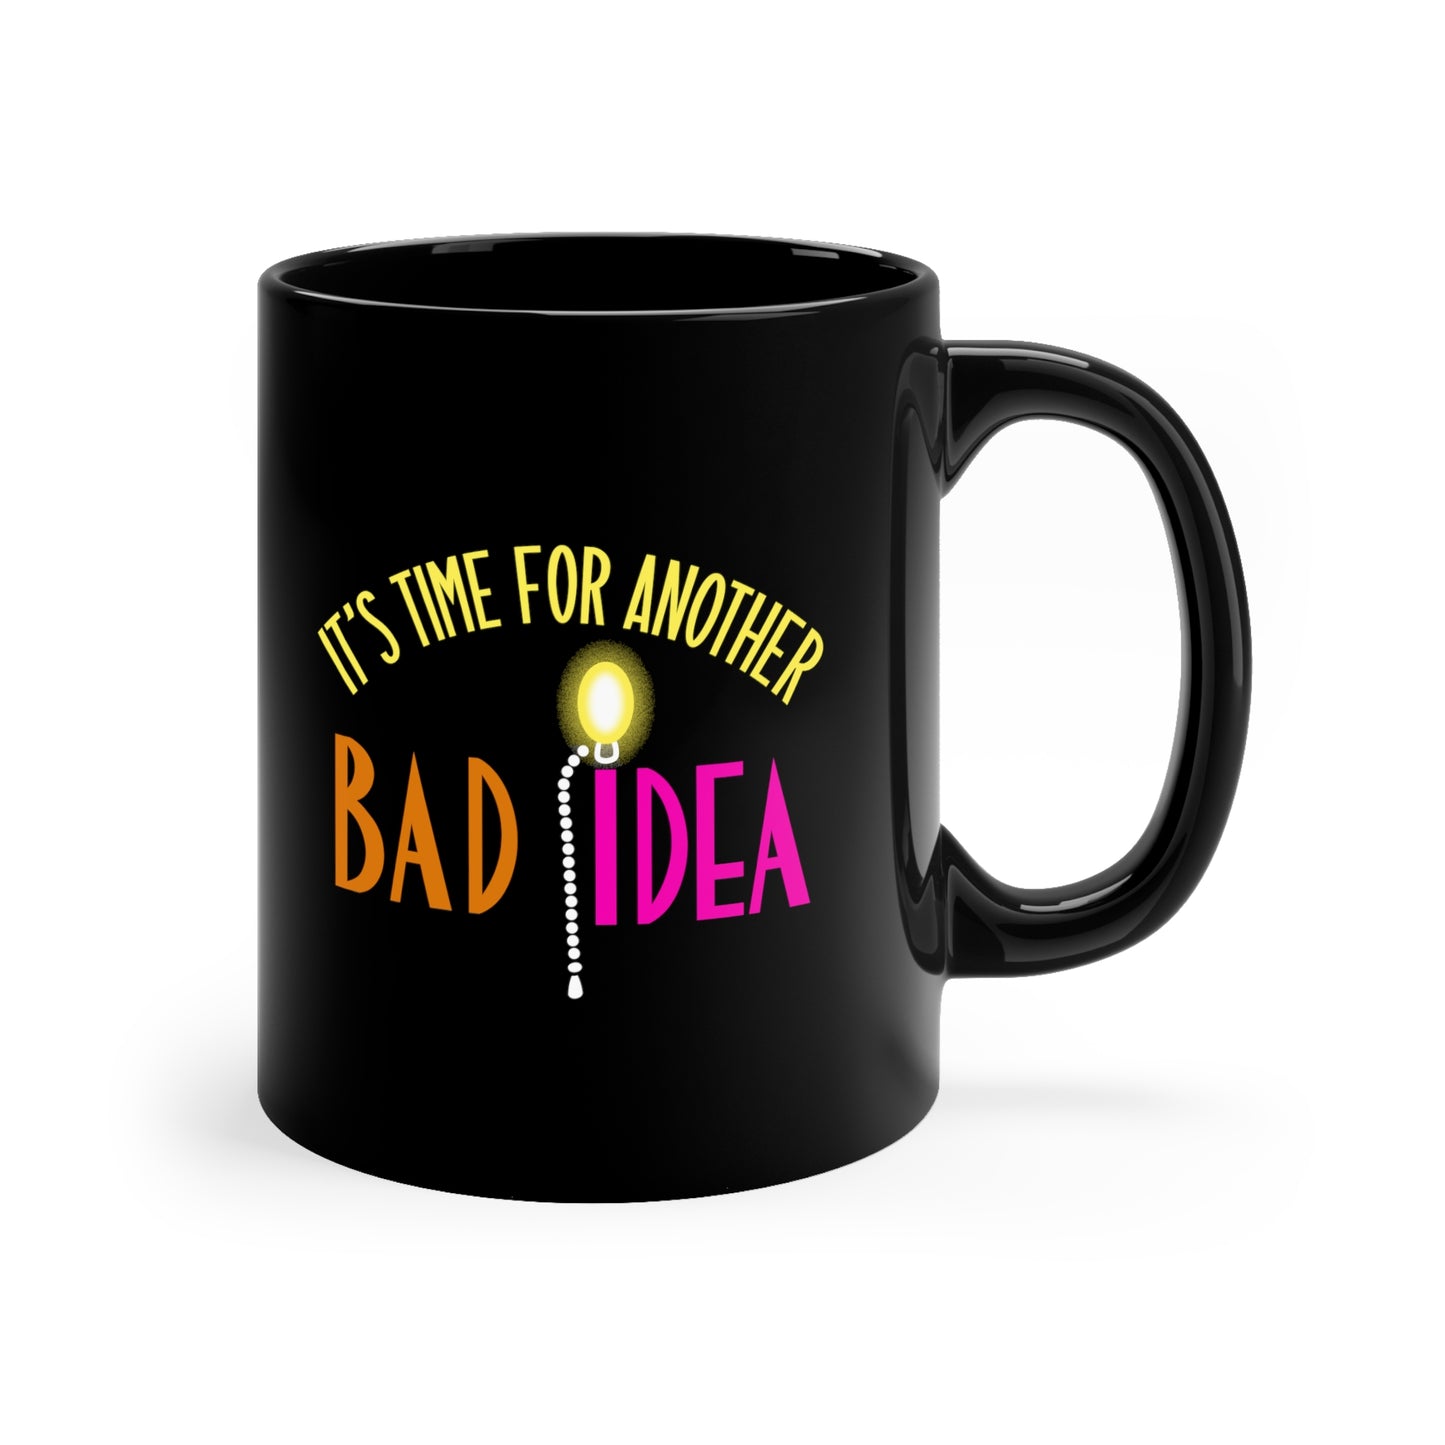 Bad Idea ceramic mug